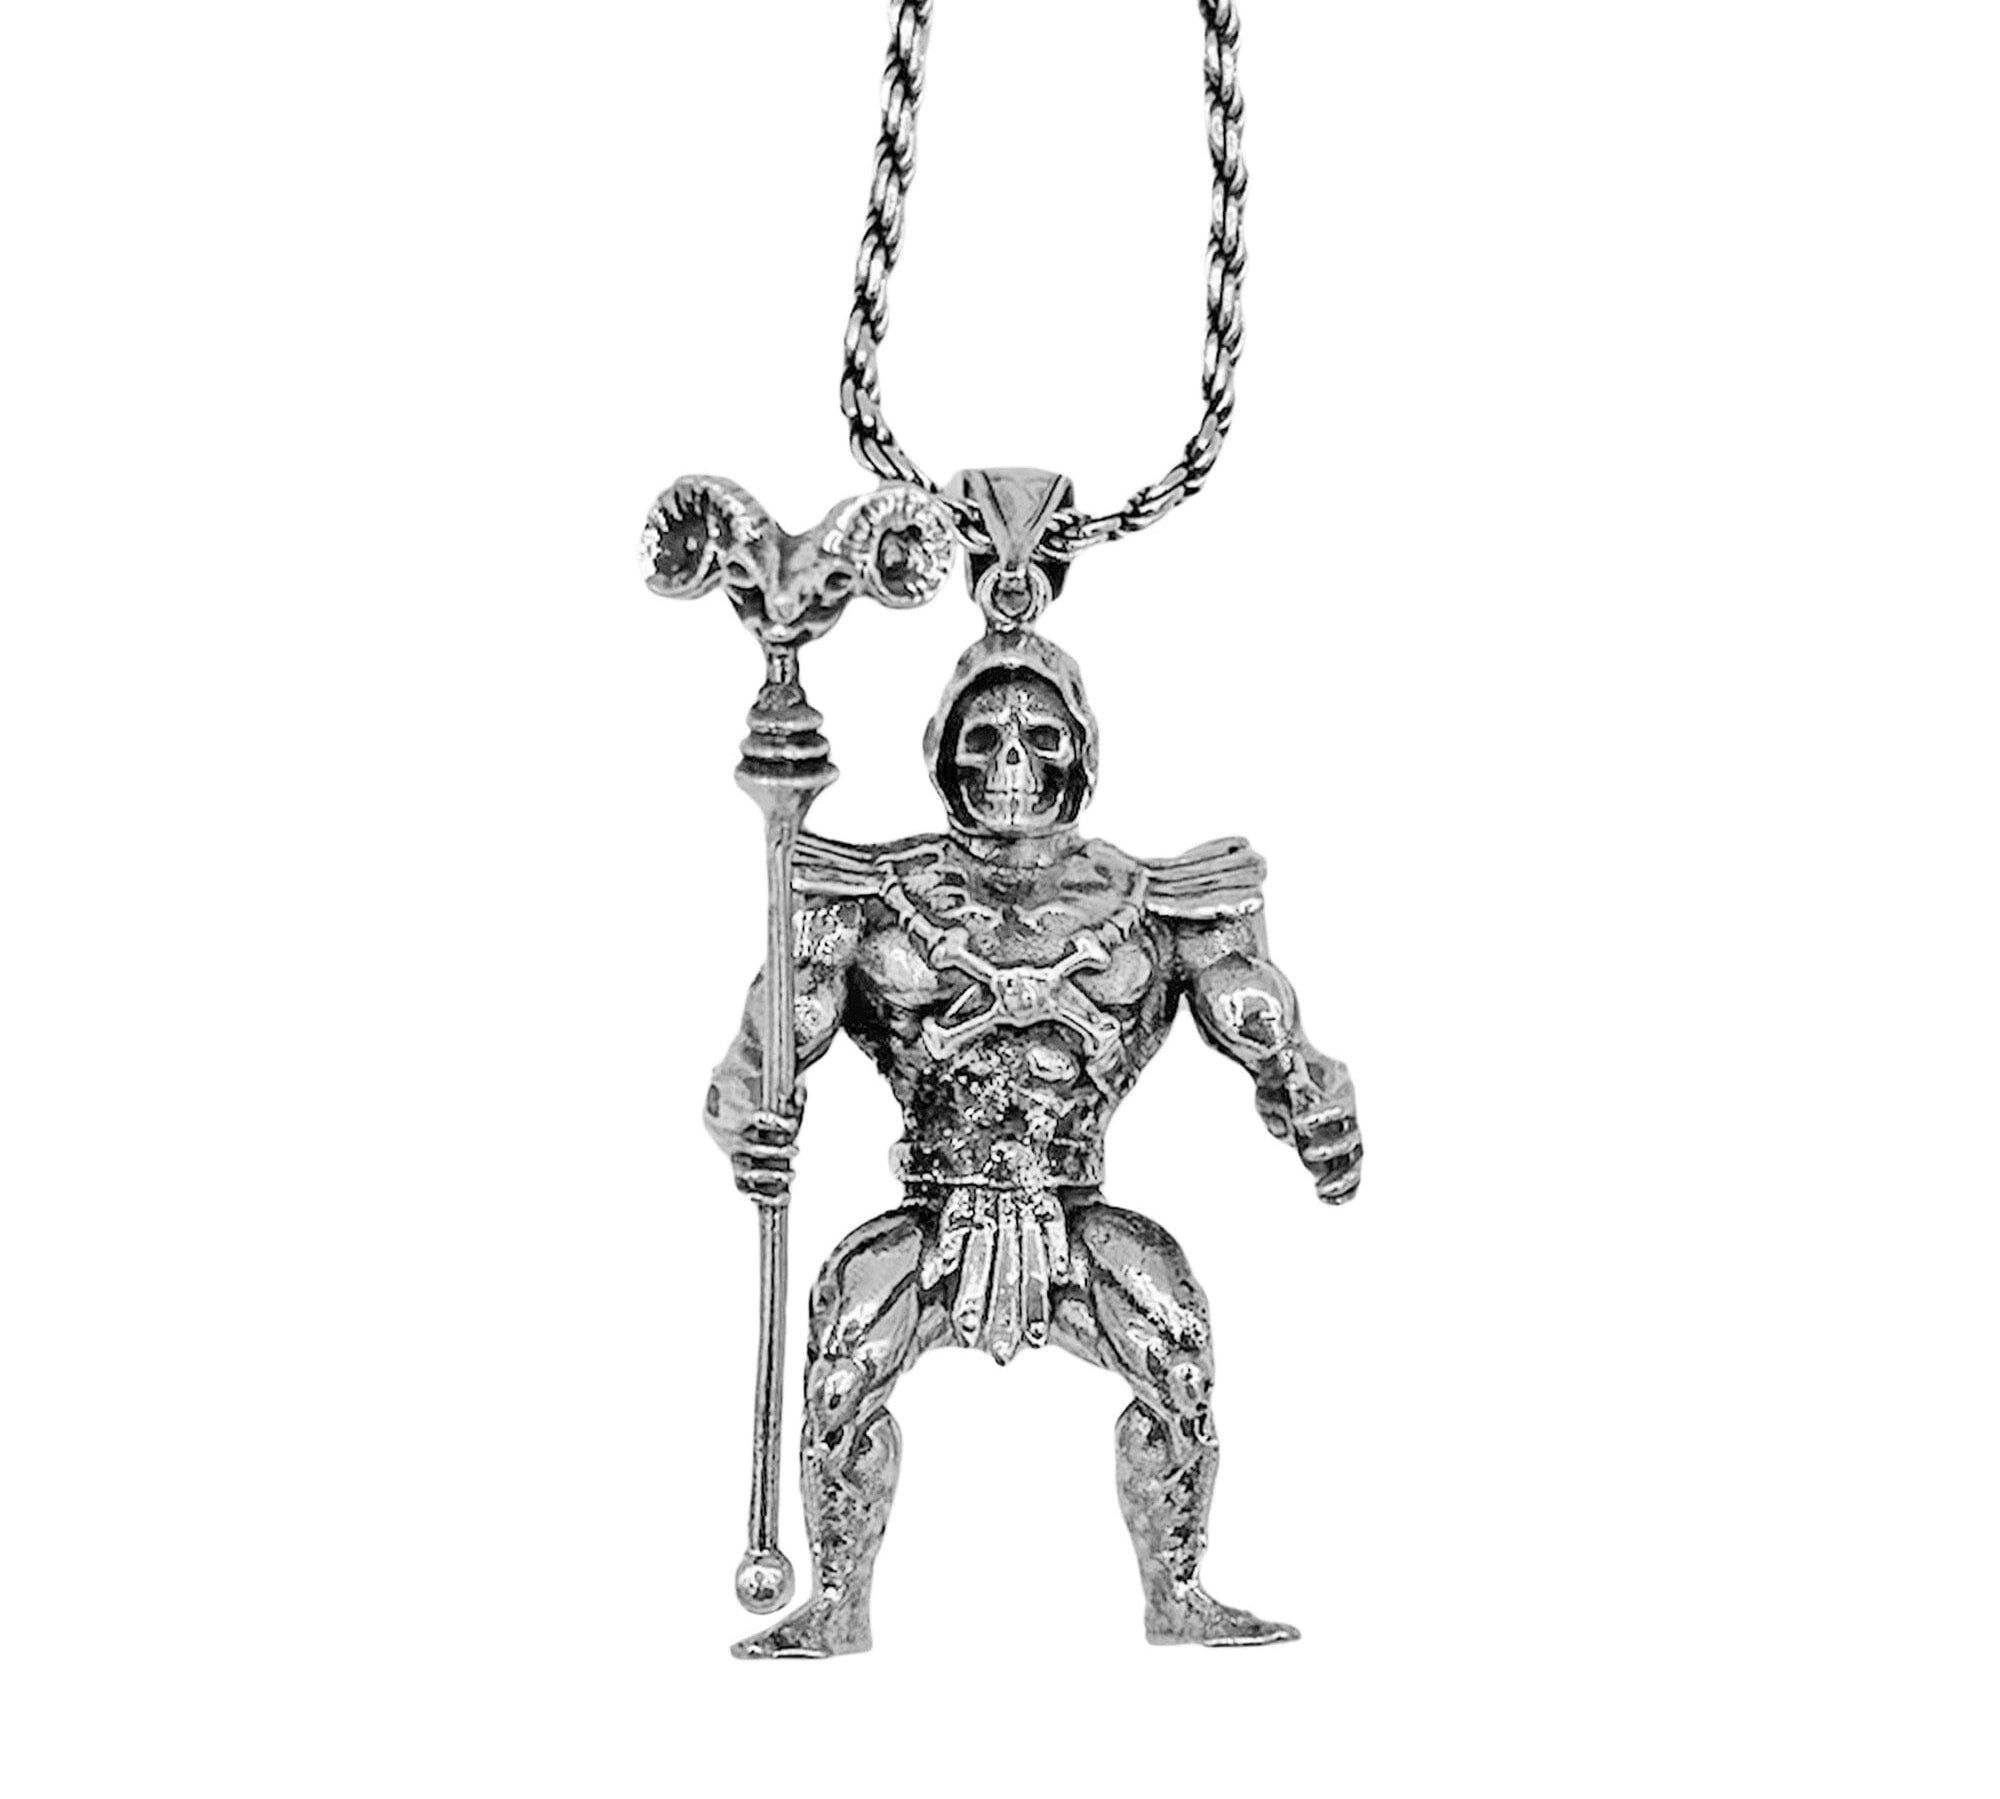 Skeletor pendant, MOTU pendant, Skeletor Necklace